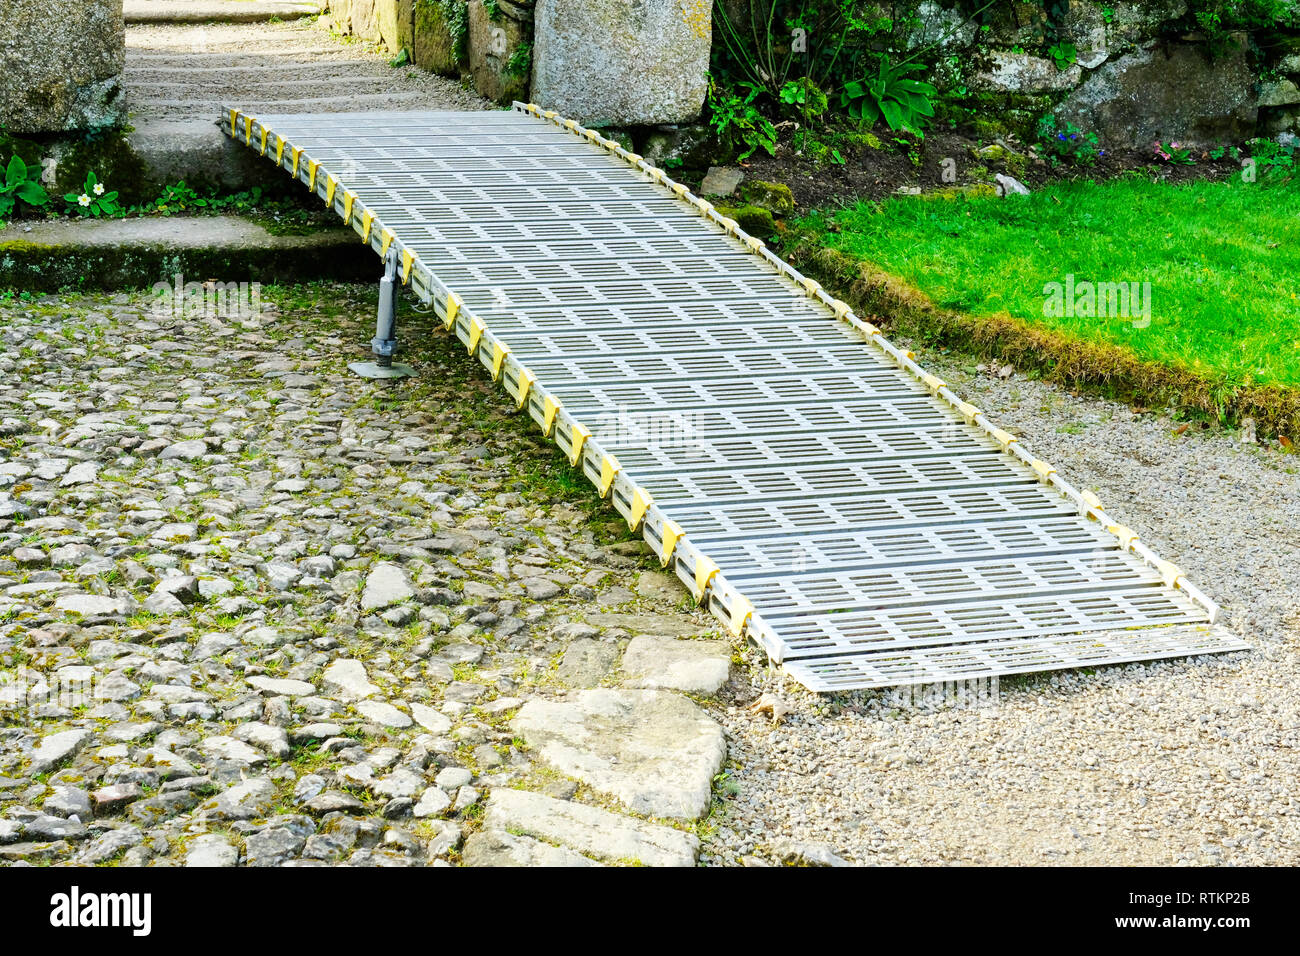 Outdoor rampe per sedie a rotelle in un paese giardino - Giovanni Gollop Foto Stock